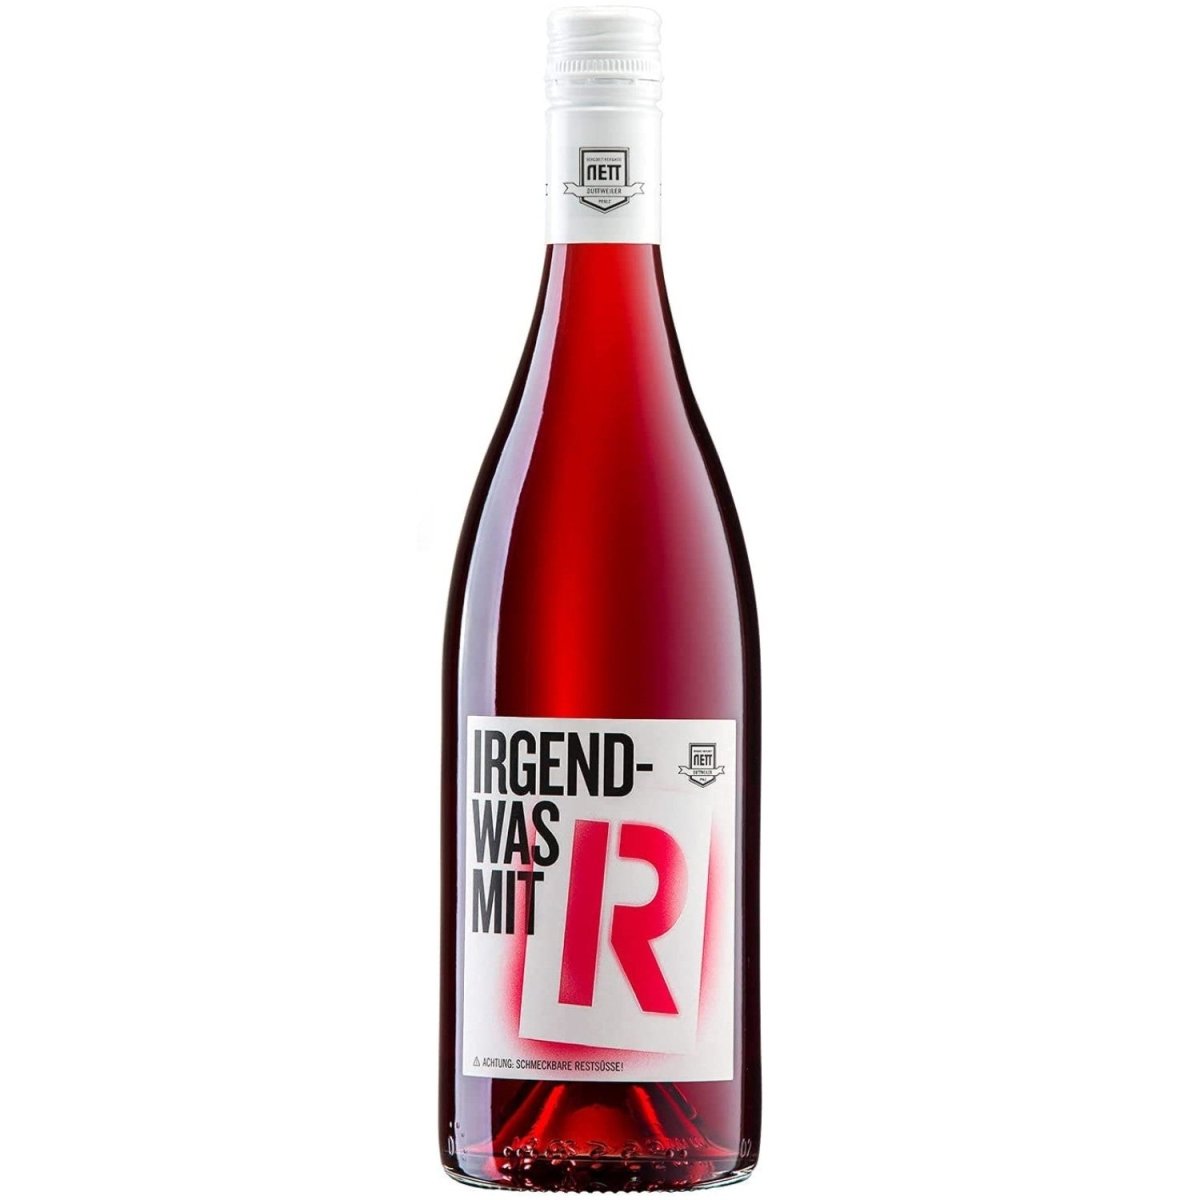 Weingut Bergdolt - Reif & Nett Irgendwas mit R Rosé Cuvee Rosé Dornfelder Spätburgunder Deutschland restsüß Roséwein (12 x 0,75l) - Versanel - 